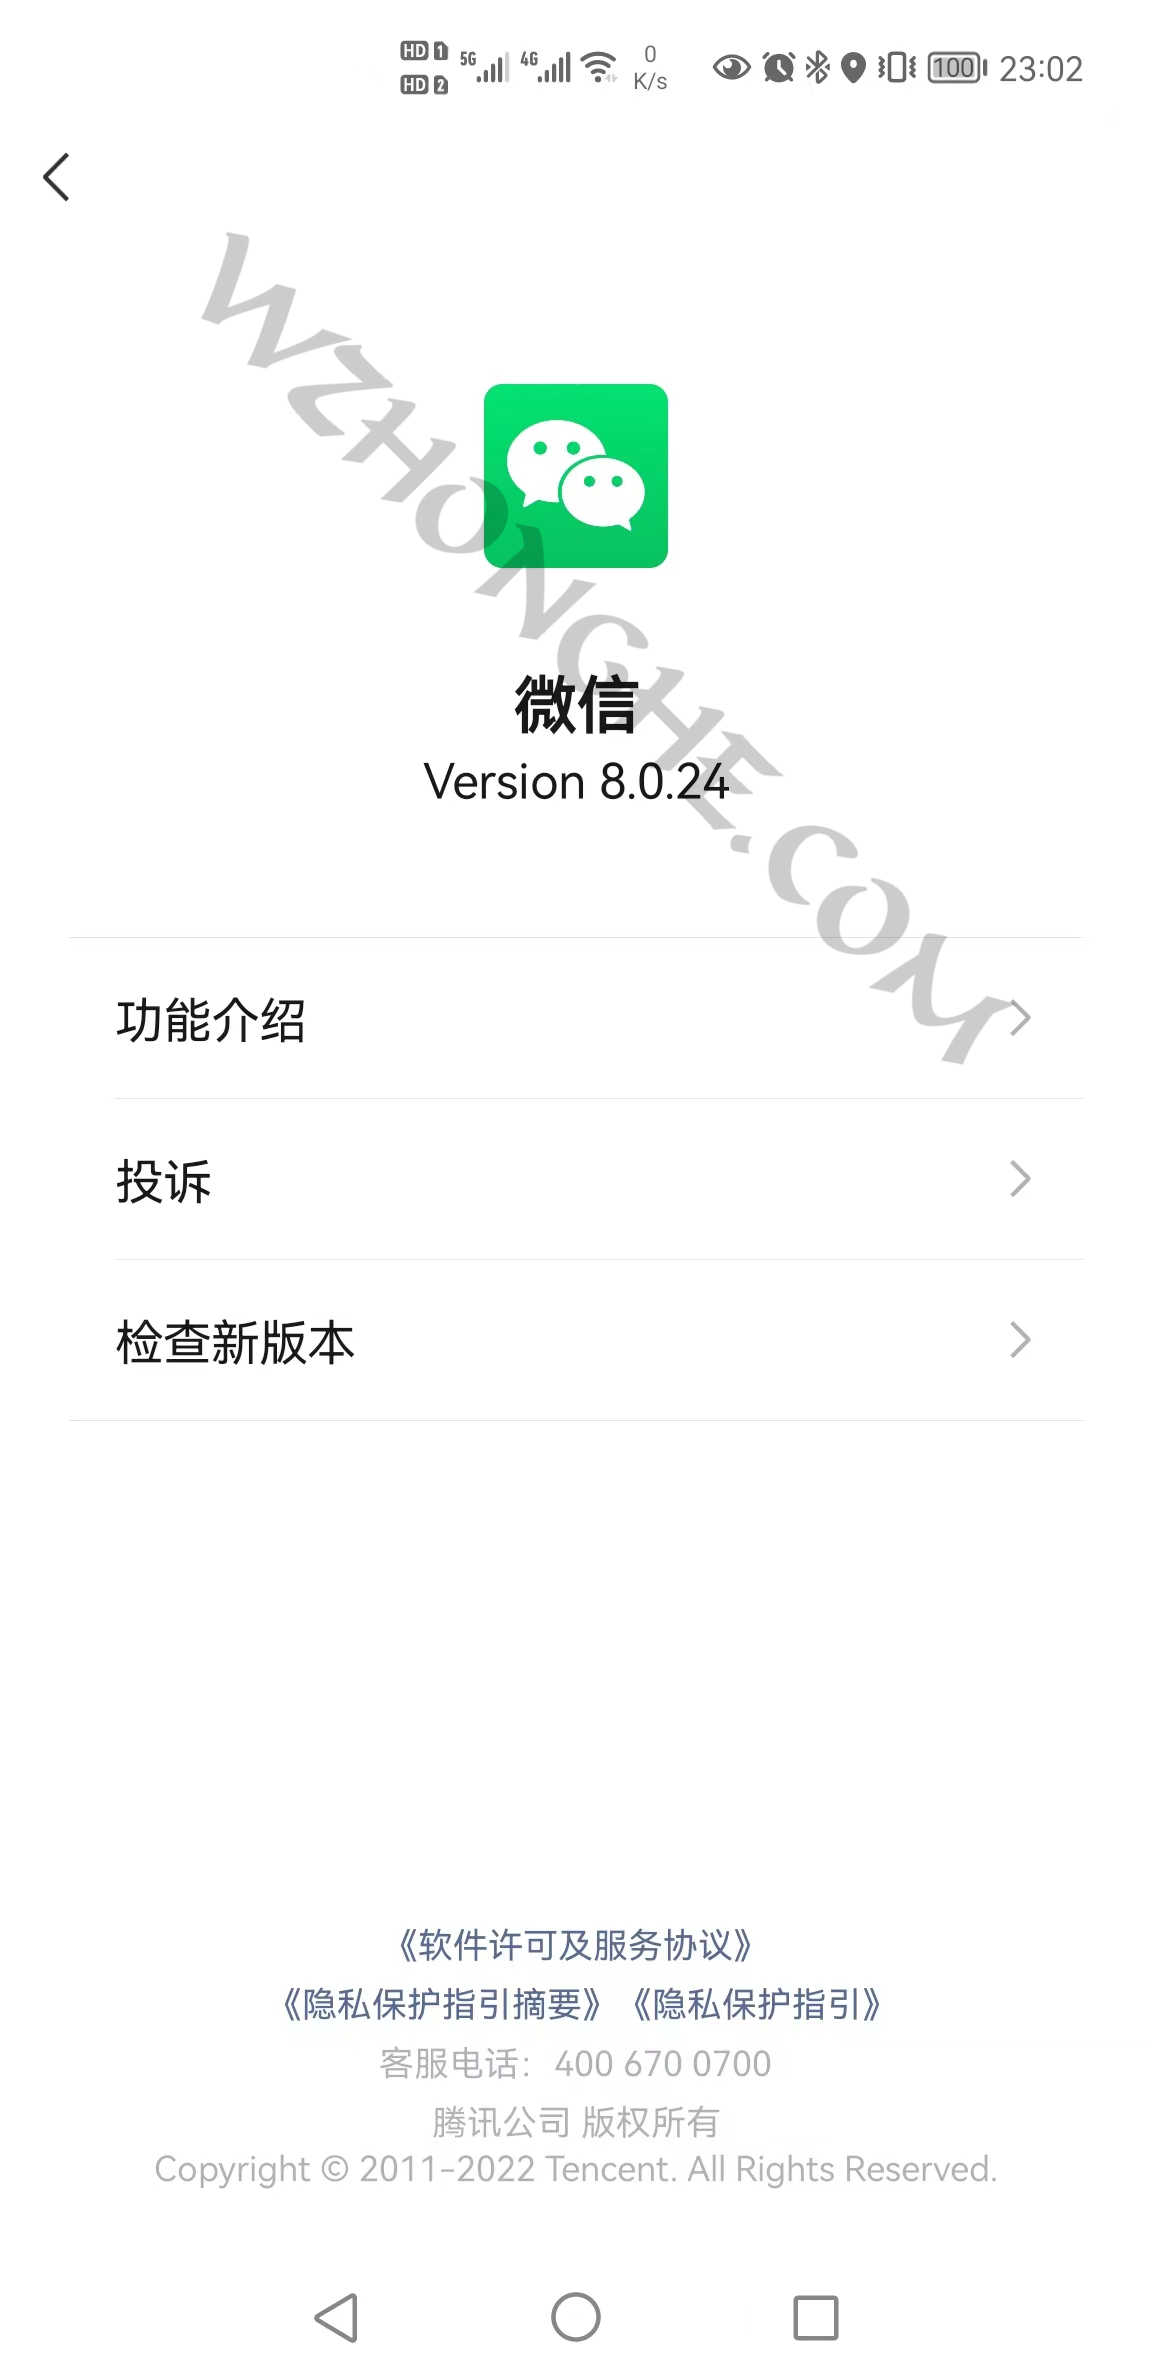 微信WeChat for Android - 无中和wzhonghe.com -1